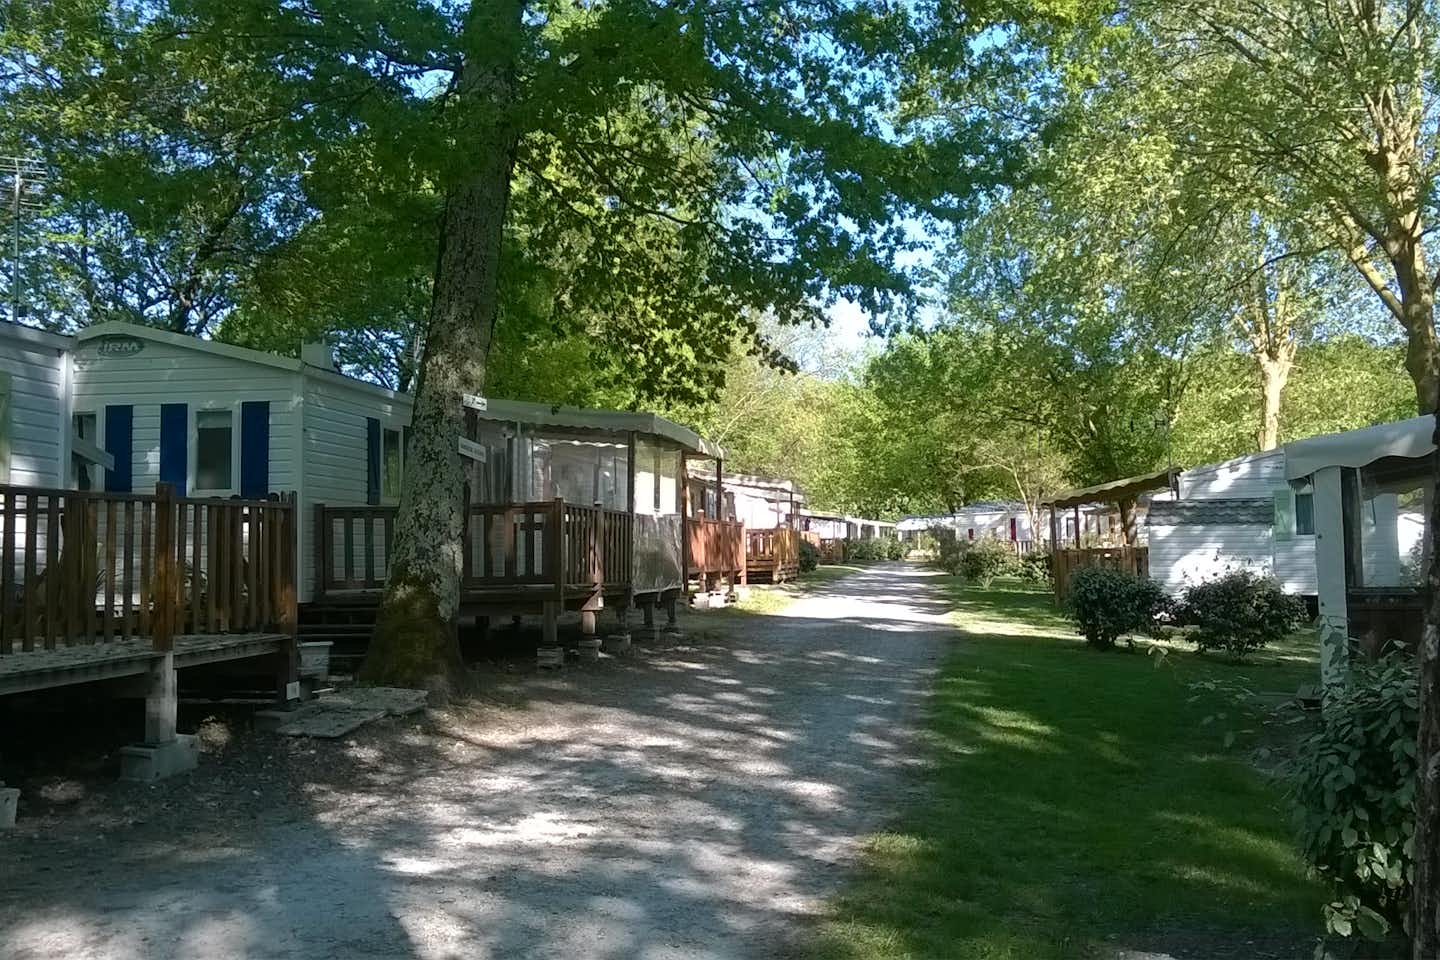 Camping Walmone - Allee auf dem Campingplatz mit Mobilheimen zu beiden Seiten